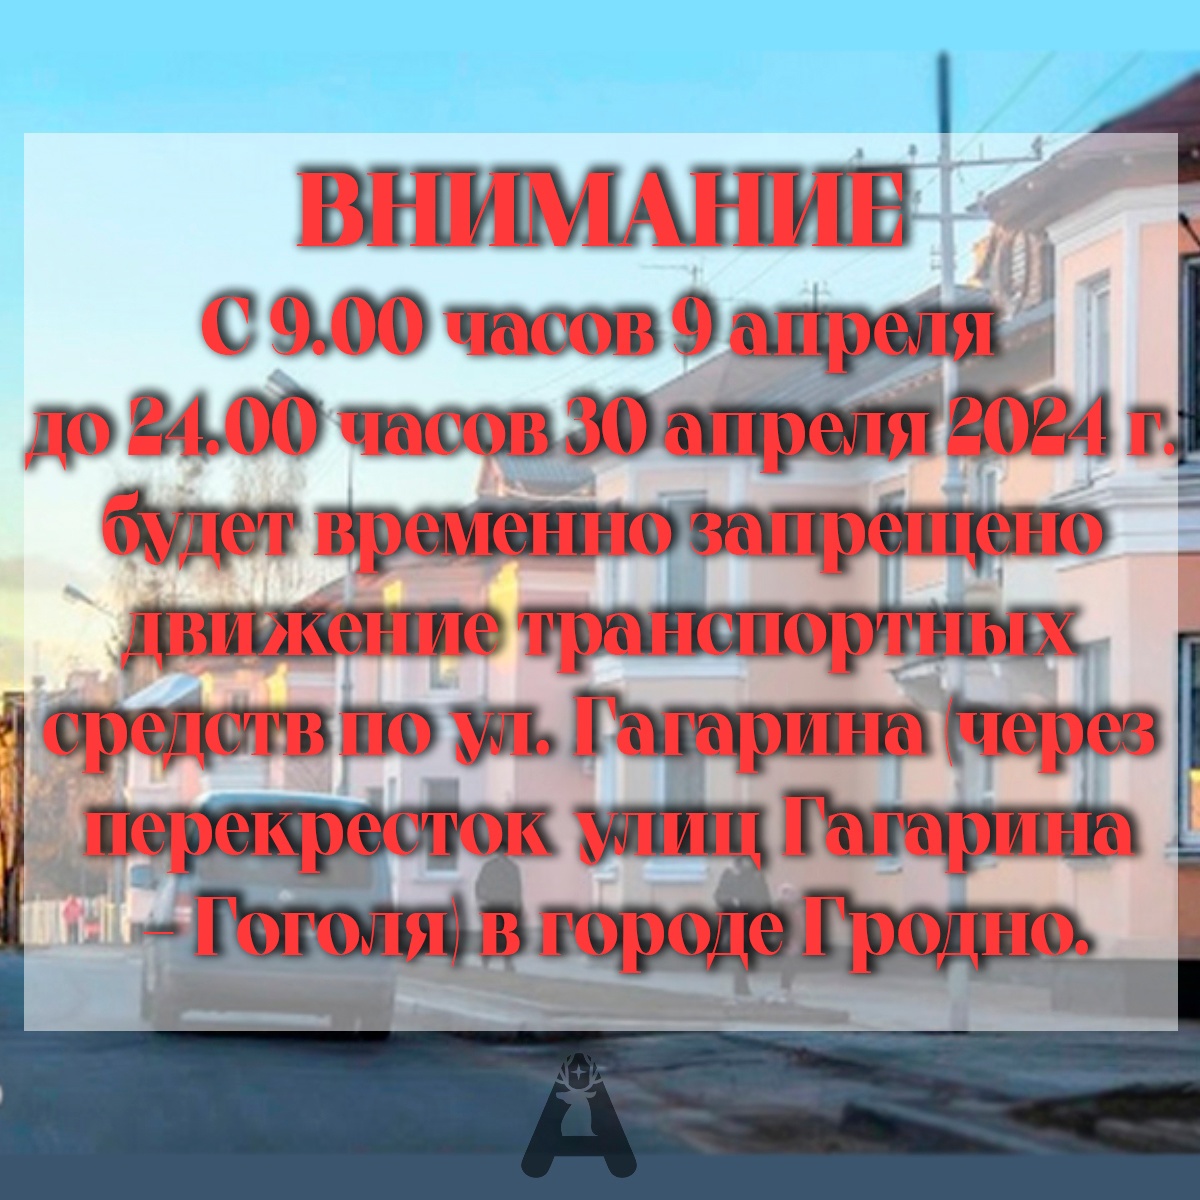 Временное запрещение движения транспортных средств с 9.00 часов 9 апреля до 24.00 часов 30 апреля 2024 г. по ул. Гагарина в связи с ремонтными работами